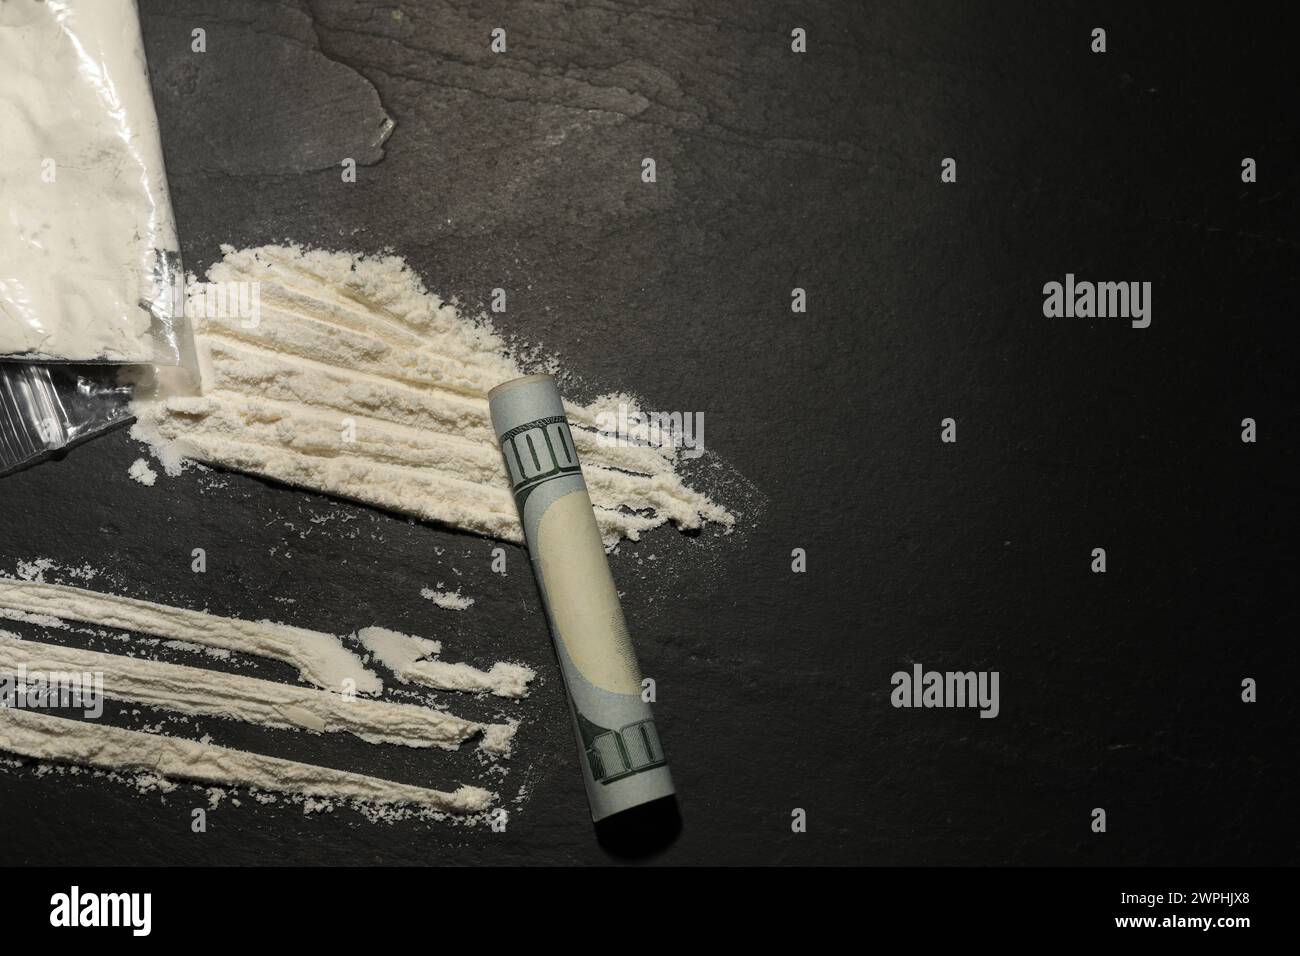 Plastiktüte mit harter Droge und gerollter Dollar-Banknote auf grauem, strukturiertem Hintergrund, flache Lay. Leerzeichen für Text Stockfoto